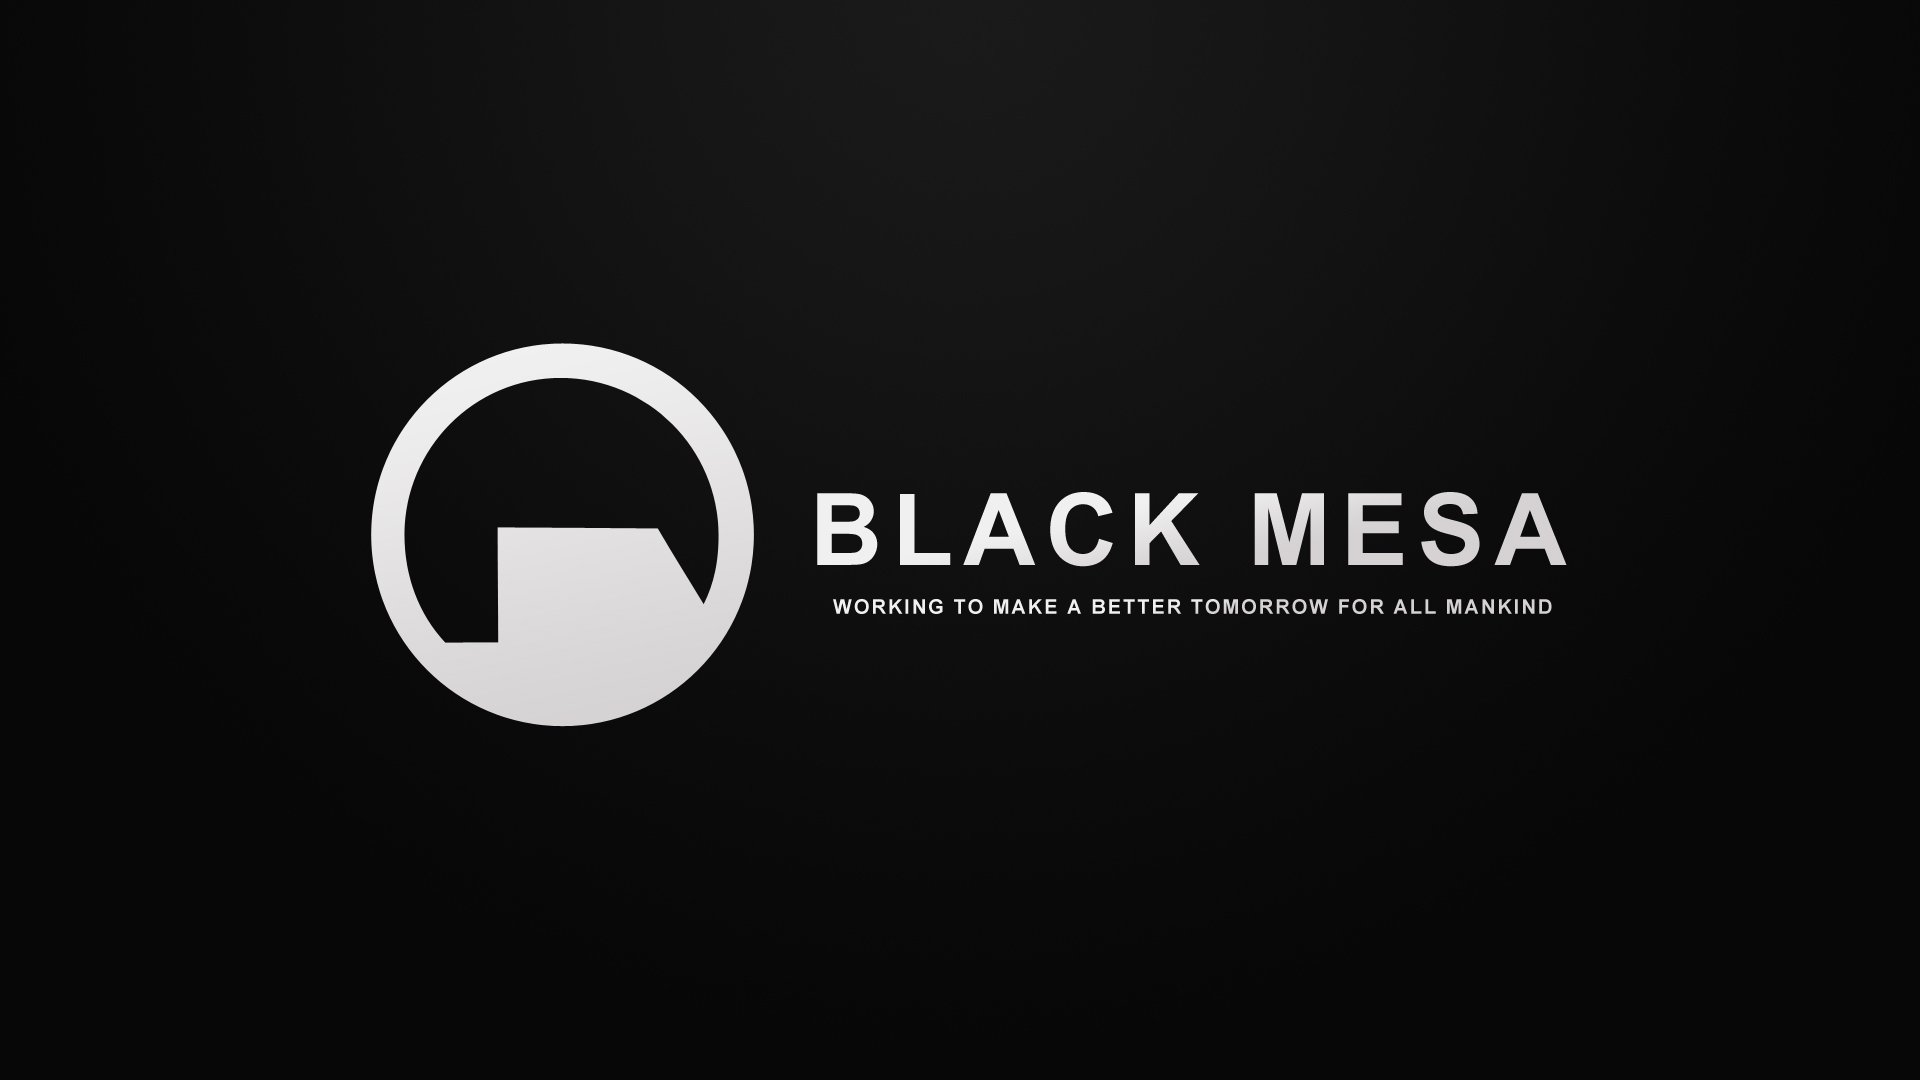 Top HD Black Mesa Wallpaper Games Kb